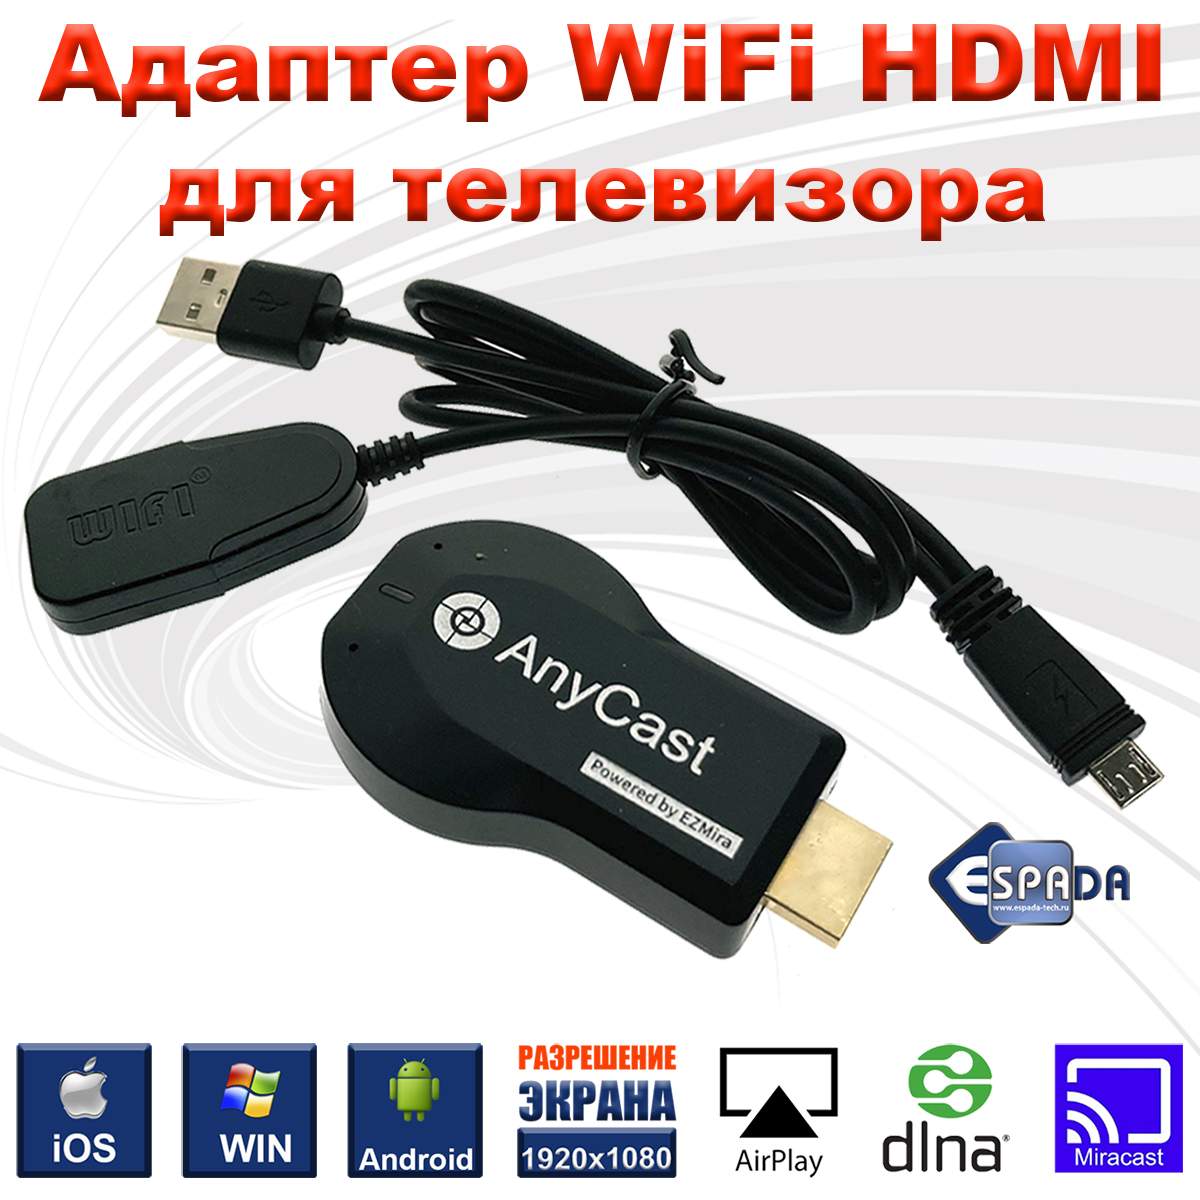 Адаптер Espada WiFi HDMI WV05 для телевизора, монитора, купить в Москве, цены в интернет-магазинах на Мегамаркет